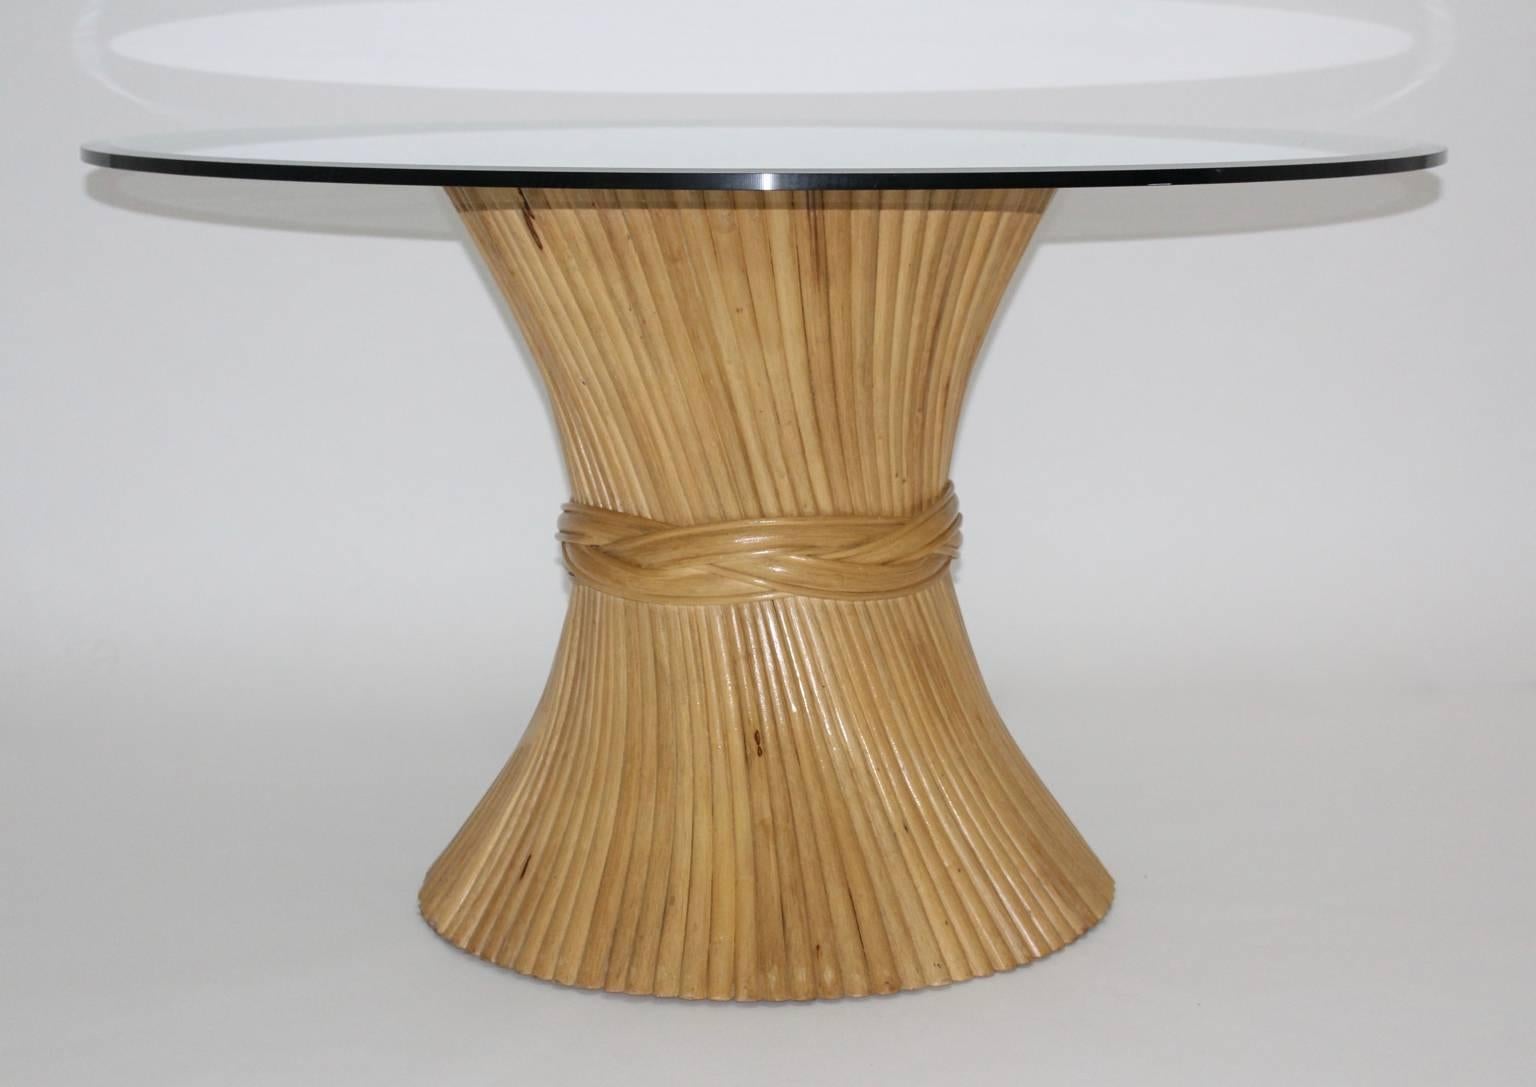 Table de salle à manger ou centre de table en bambou organique vintage en forme de gerbe de blé par Mc Guire circa 1970 Etats-Unis.
Inspirée par la Nature, la table présente une forme organique comme une gerbe de blé effilée par une